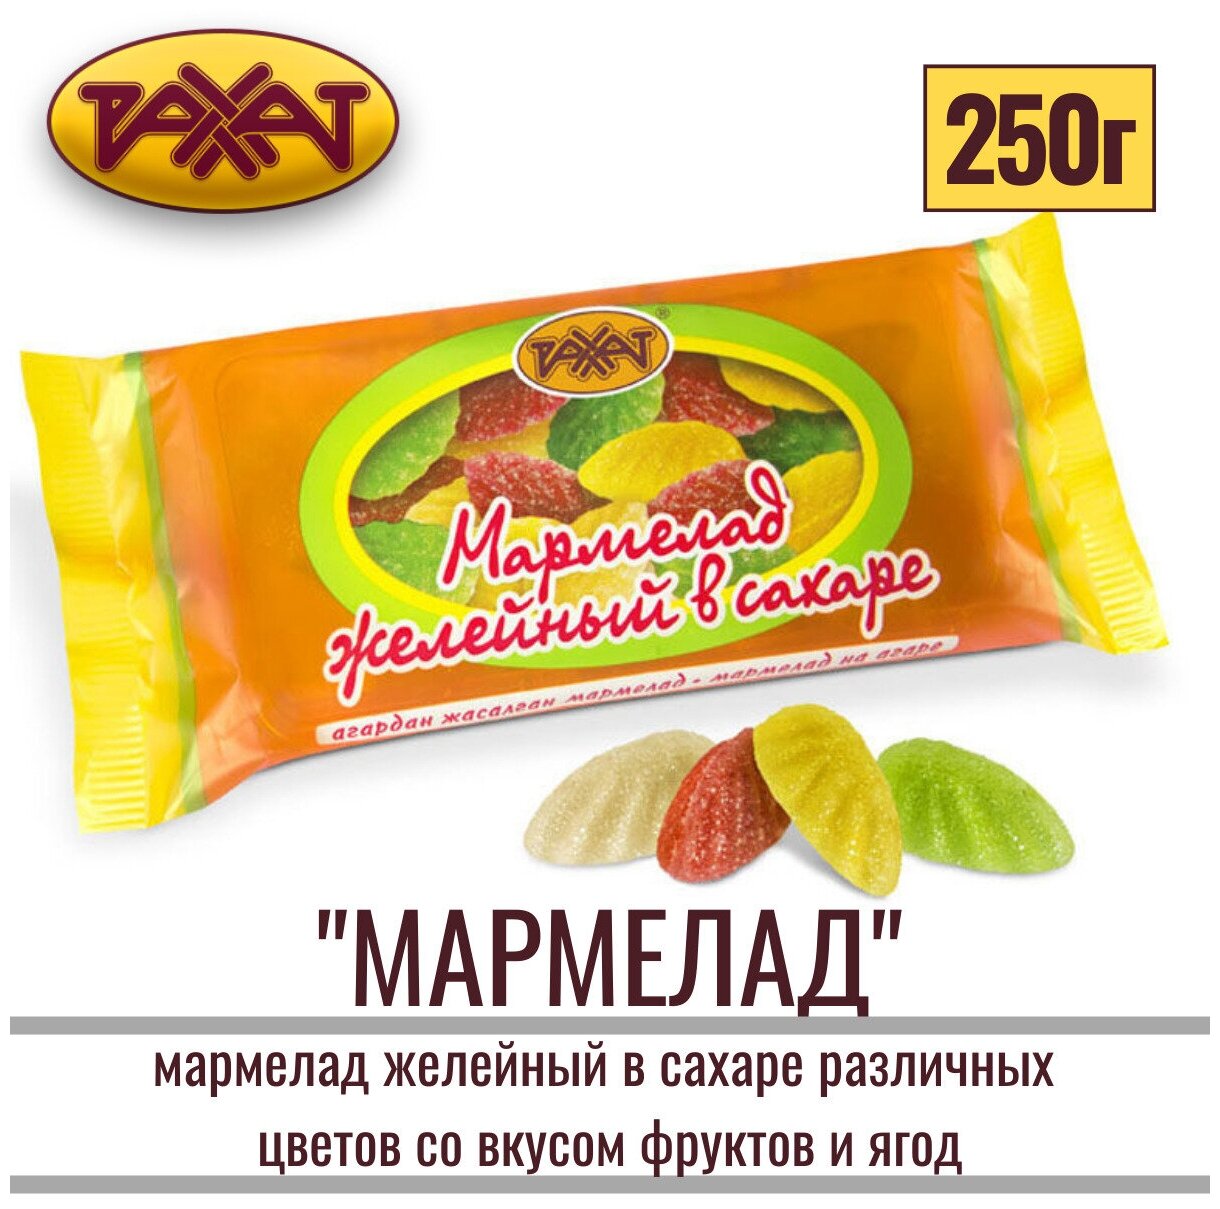 Мармелад натуральный на агаре "желейный В сахаре" различных цветов со вкусом фруктов и ягод 250 гр /рахат